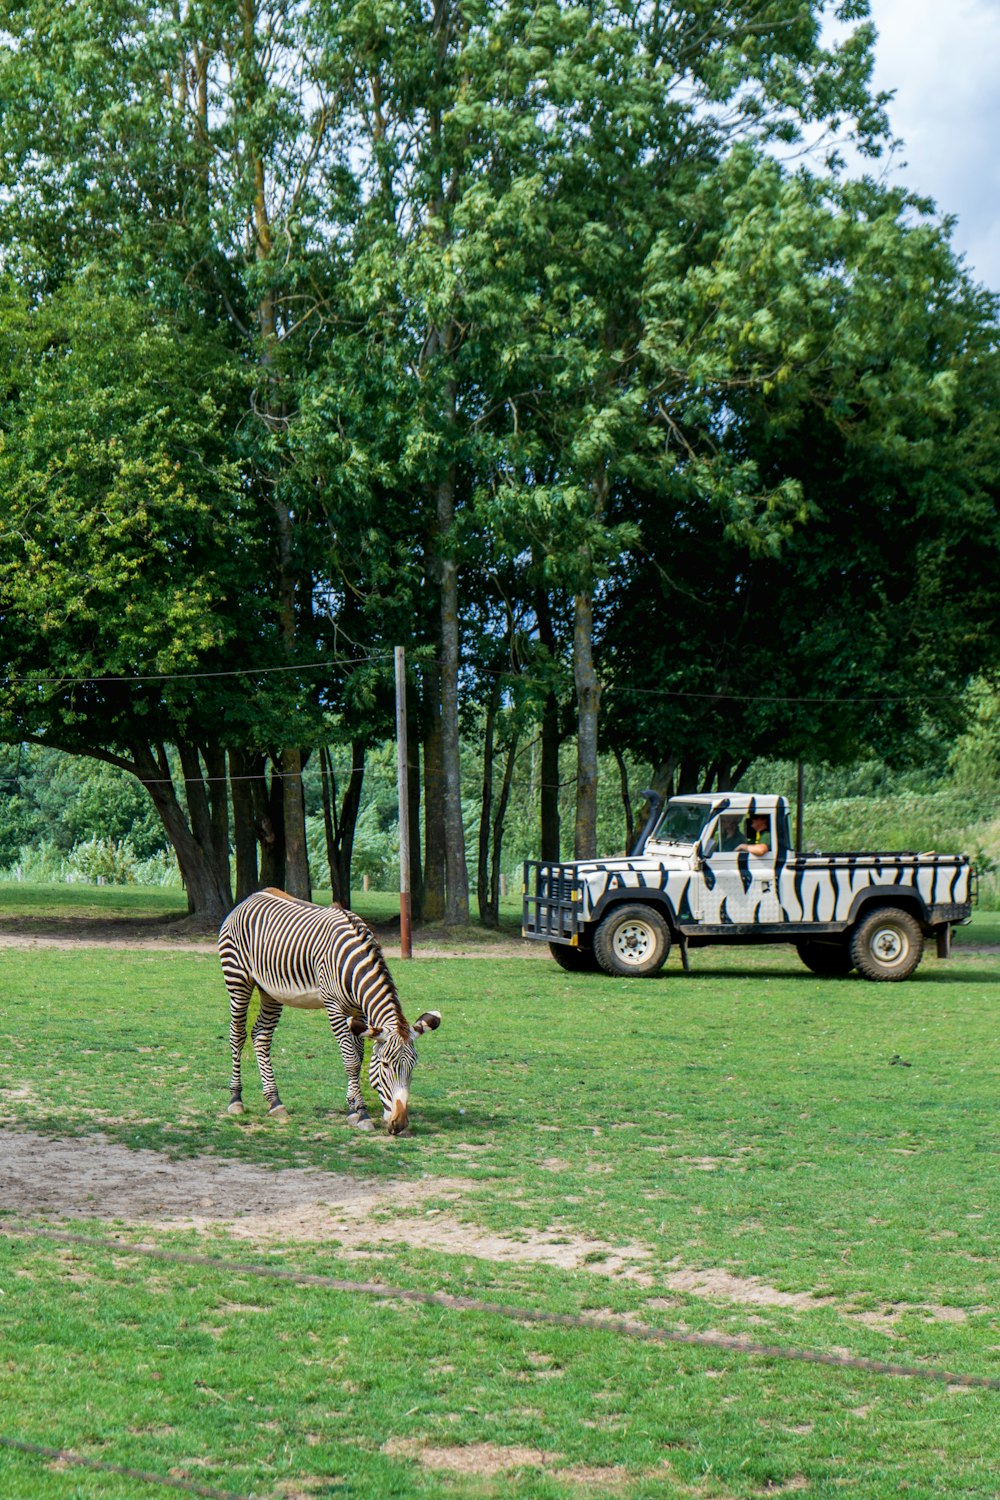 a zebra grazing in a field next to a truck